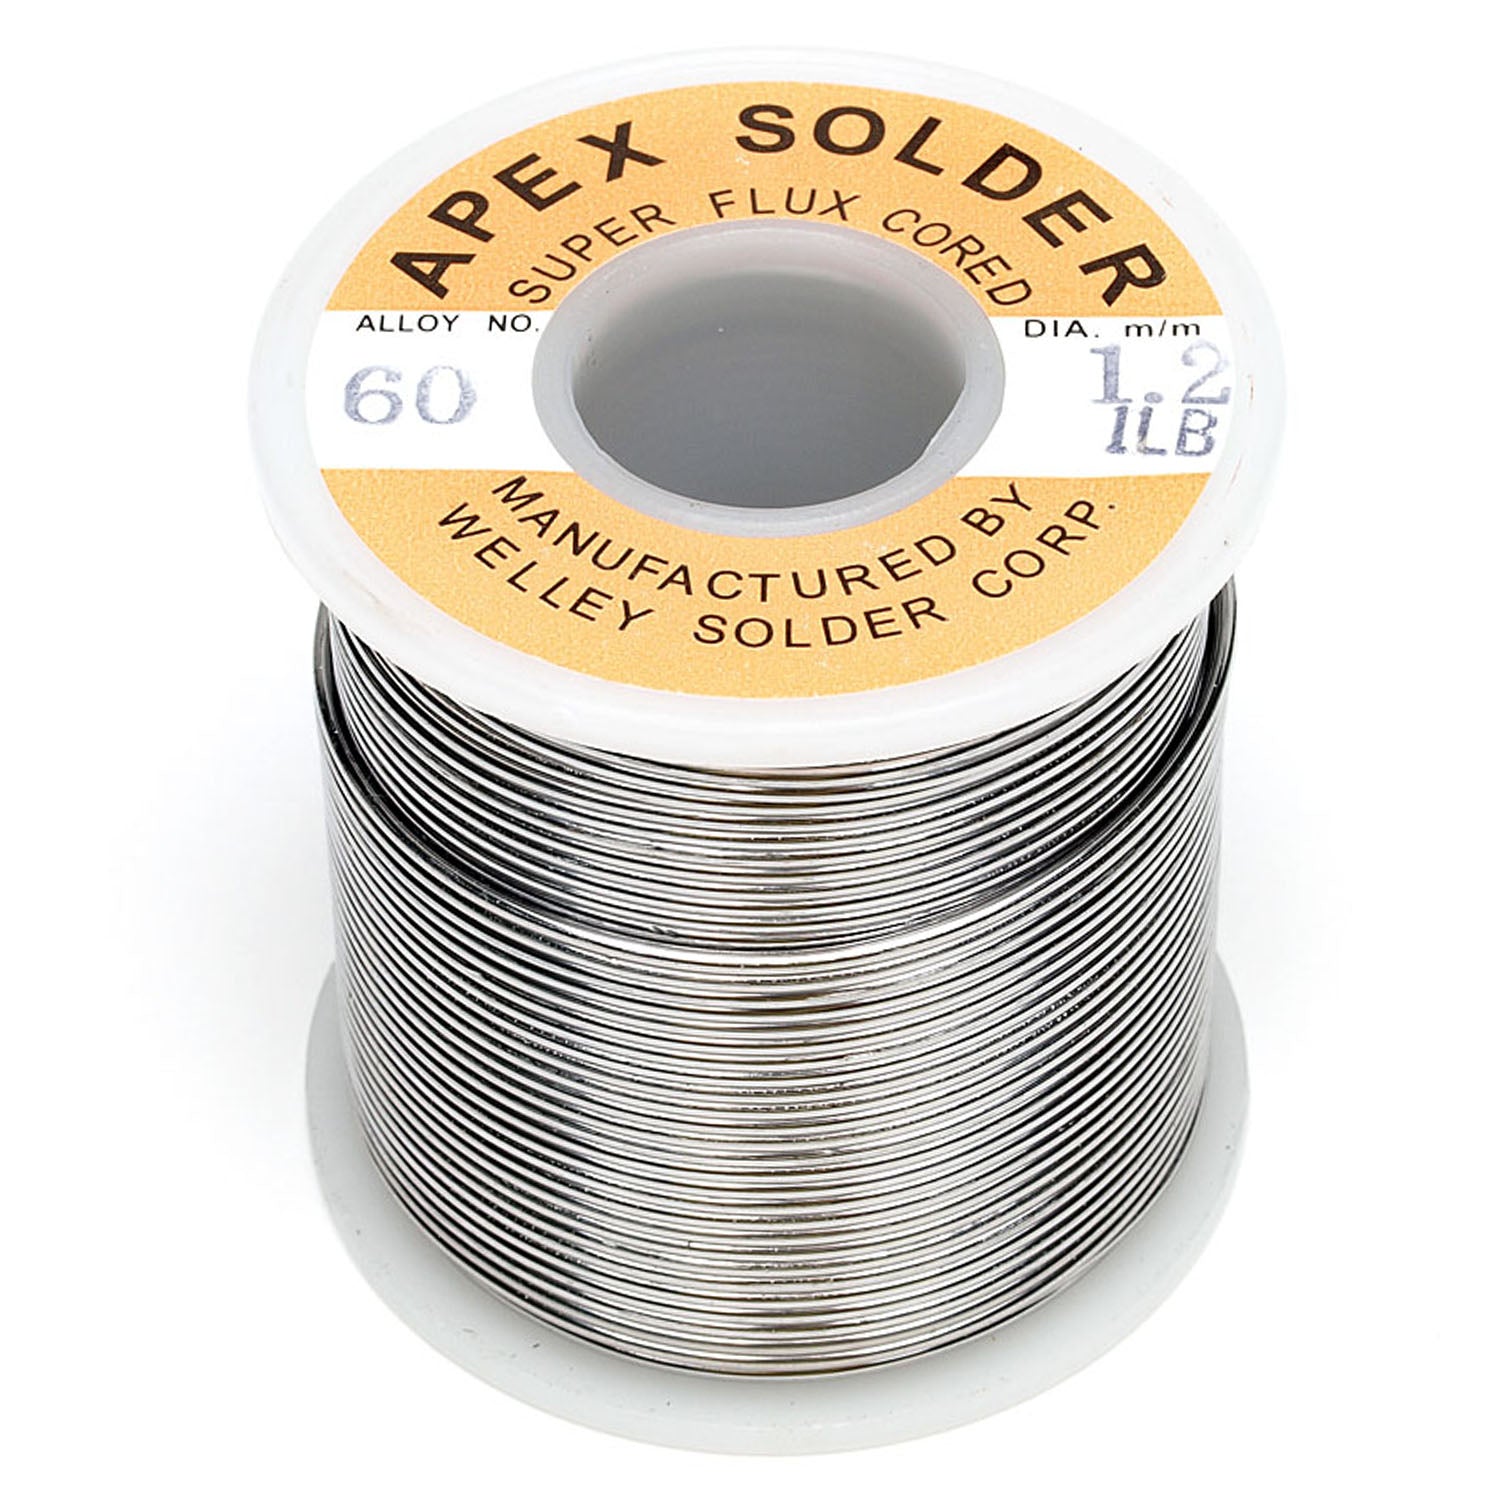 125-641210A 1.2m 1.0Ib 60/40 APEX Solder wire